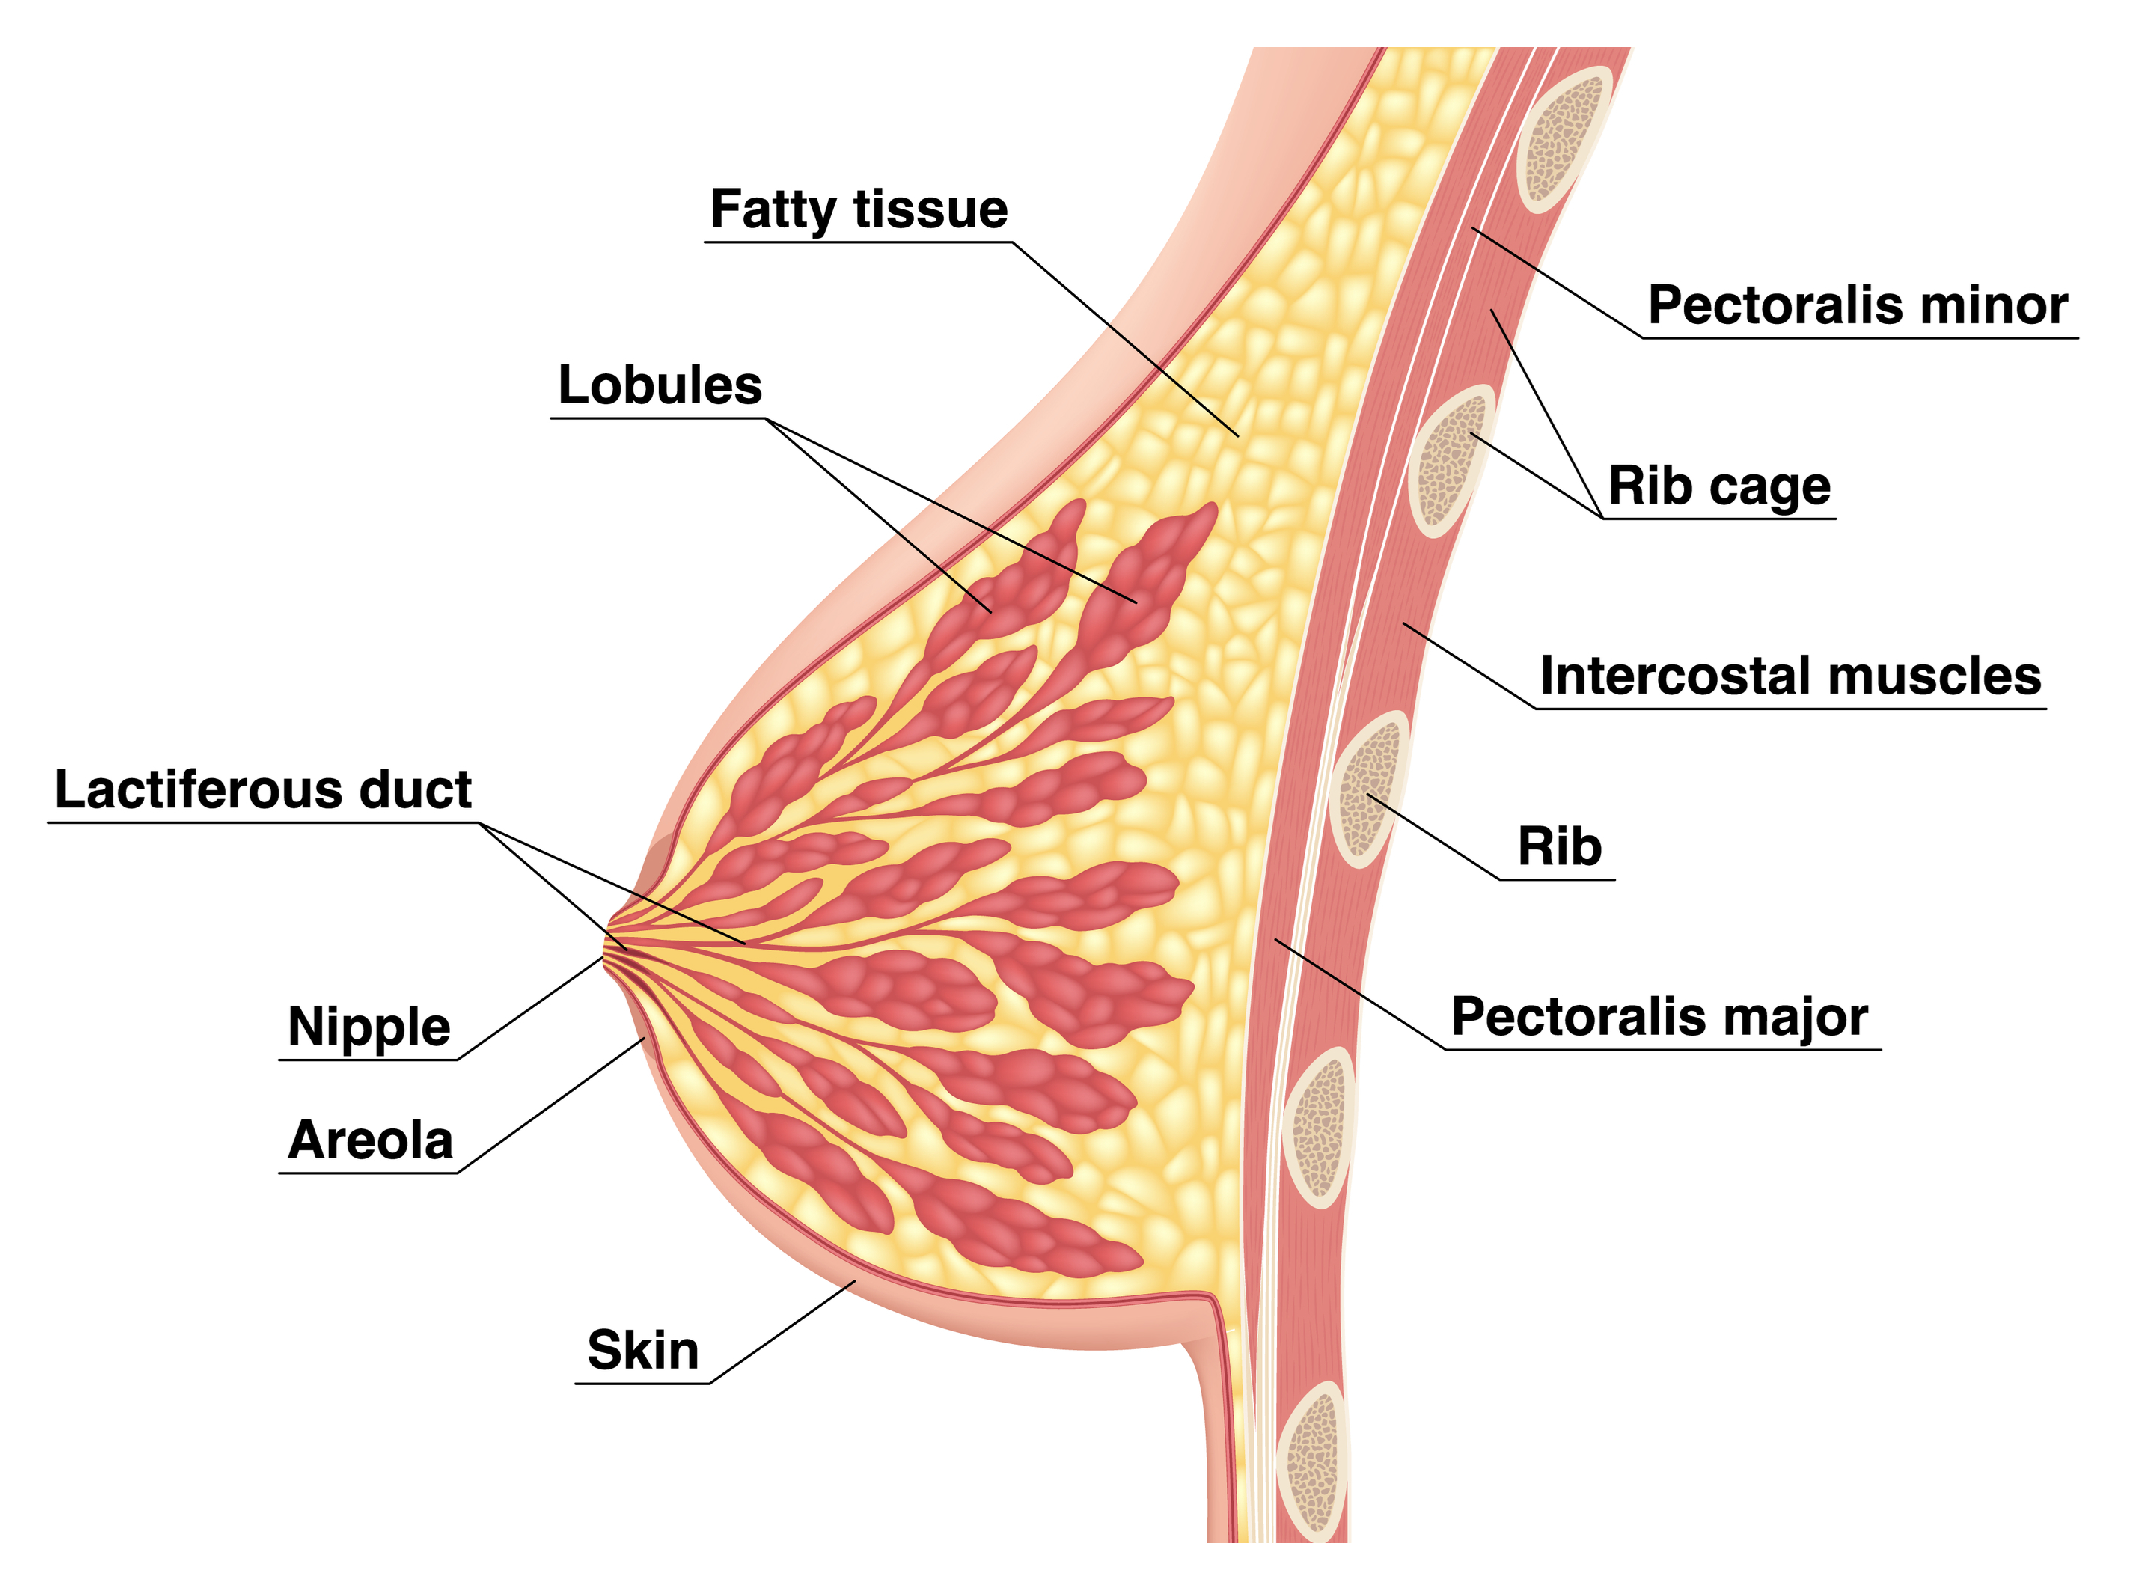 Normal breast anatomy - sagittal view